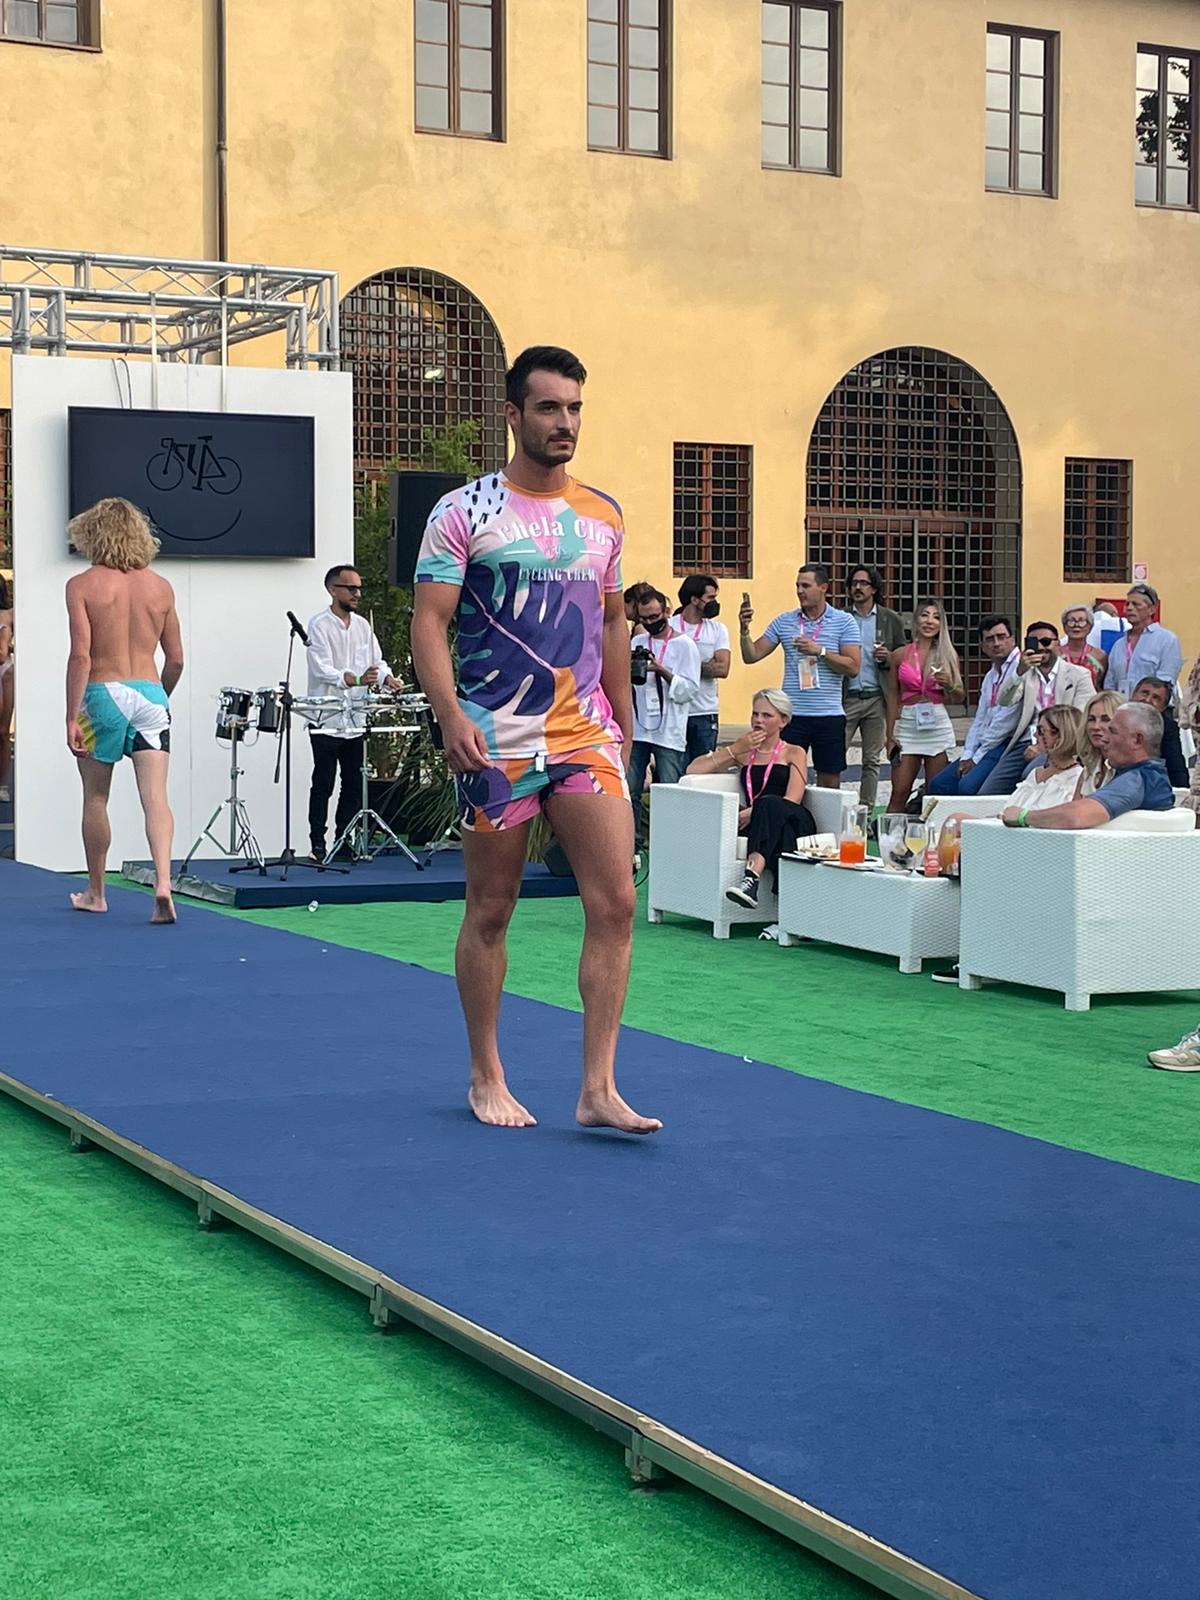 Diseñadores de Moda Cálida Gran Canaria participan en la Feria Internacional de Moda Baño Maredamare